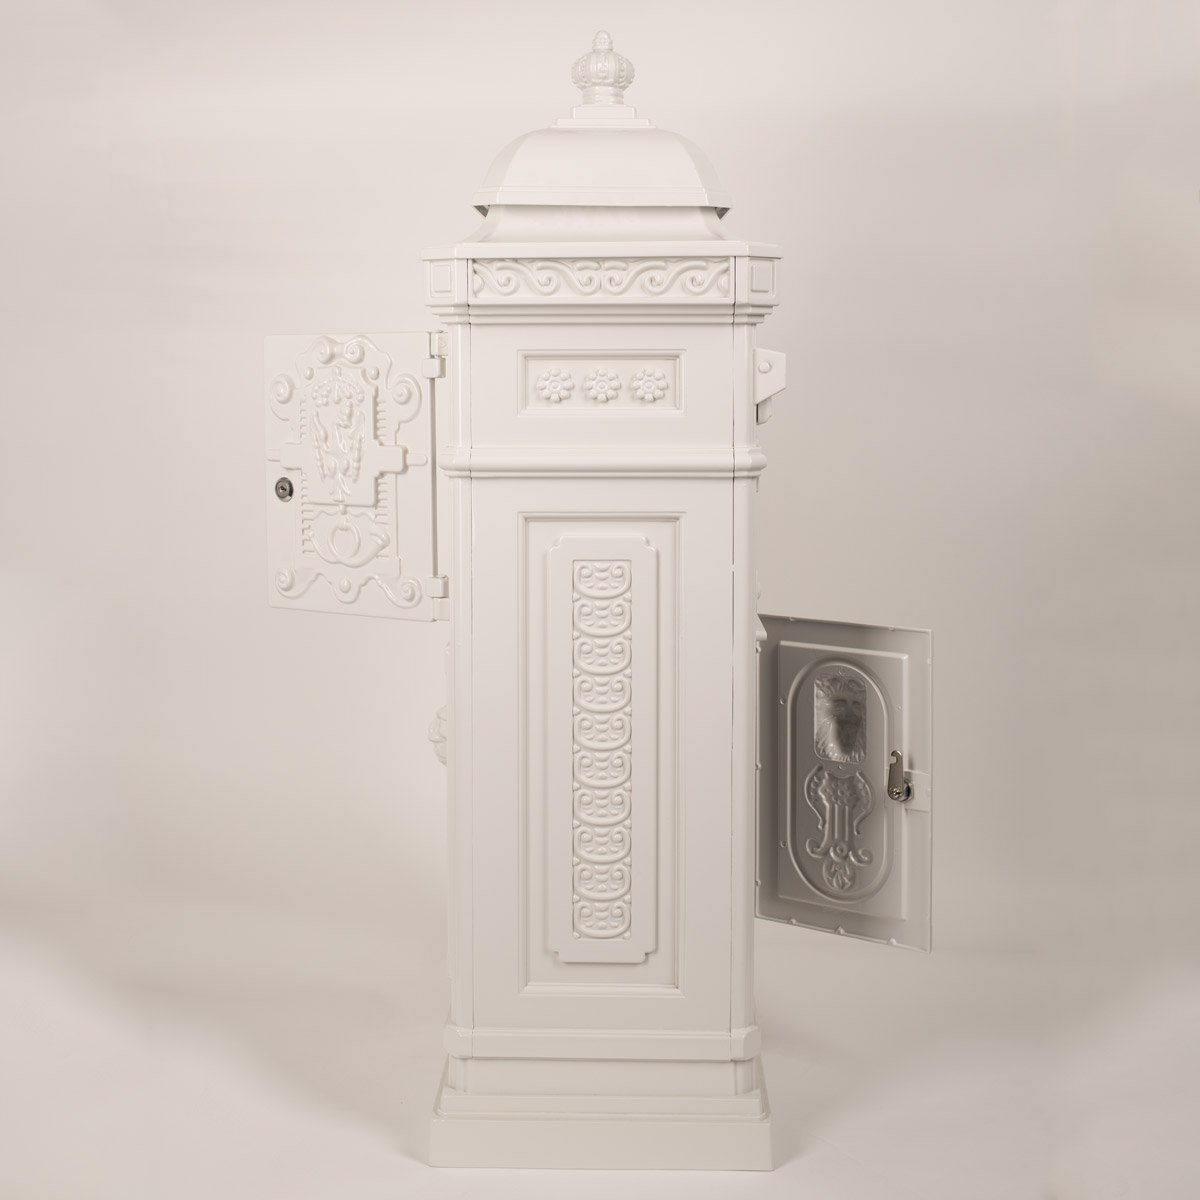 Boîte aux lettres sur pied, style antique anglais, aluminium inox  XL Blanc